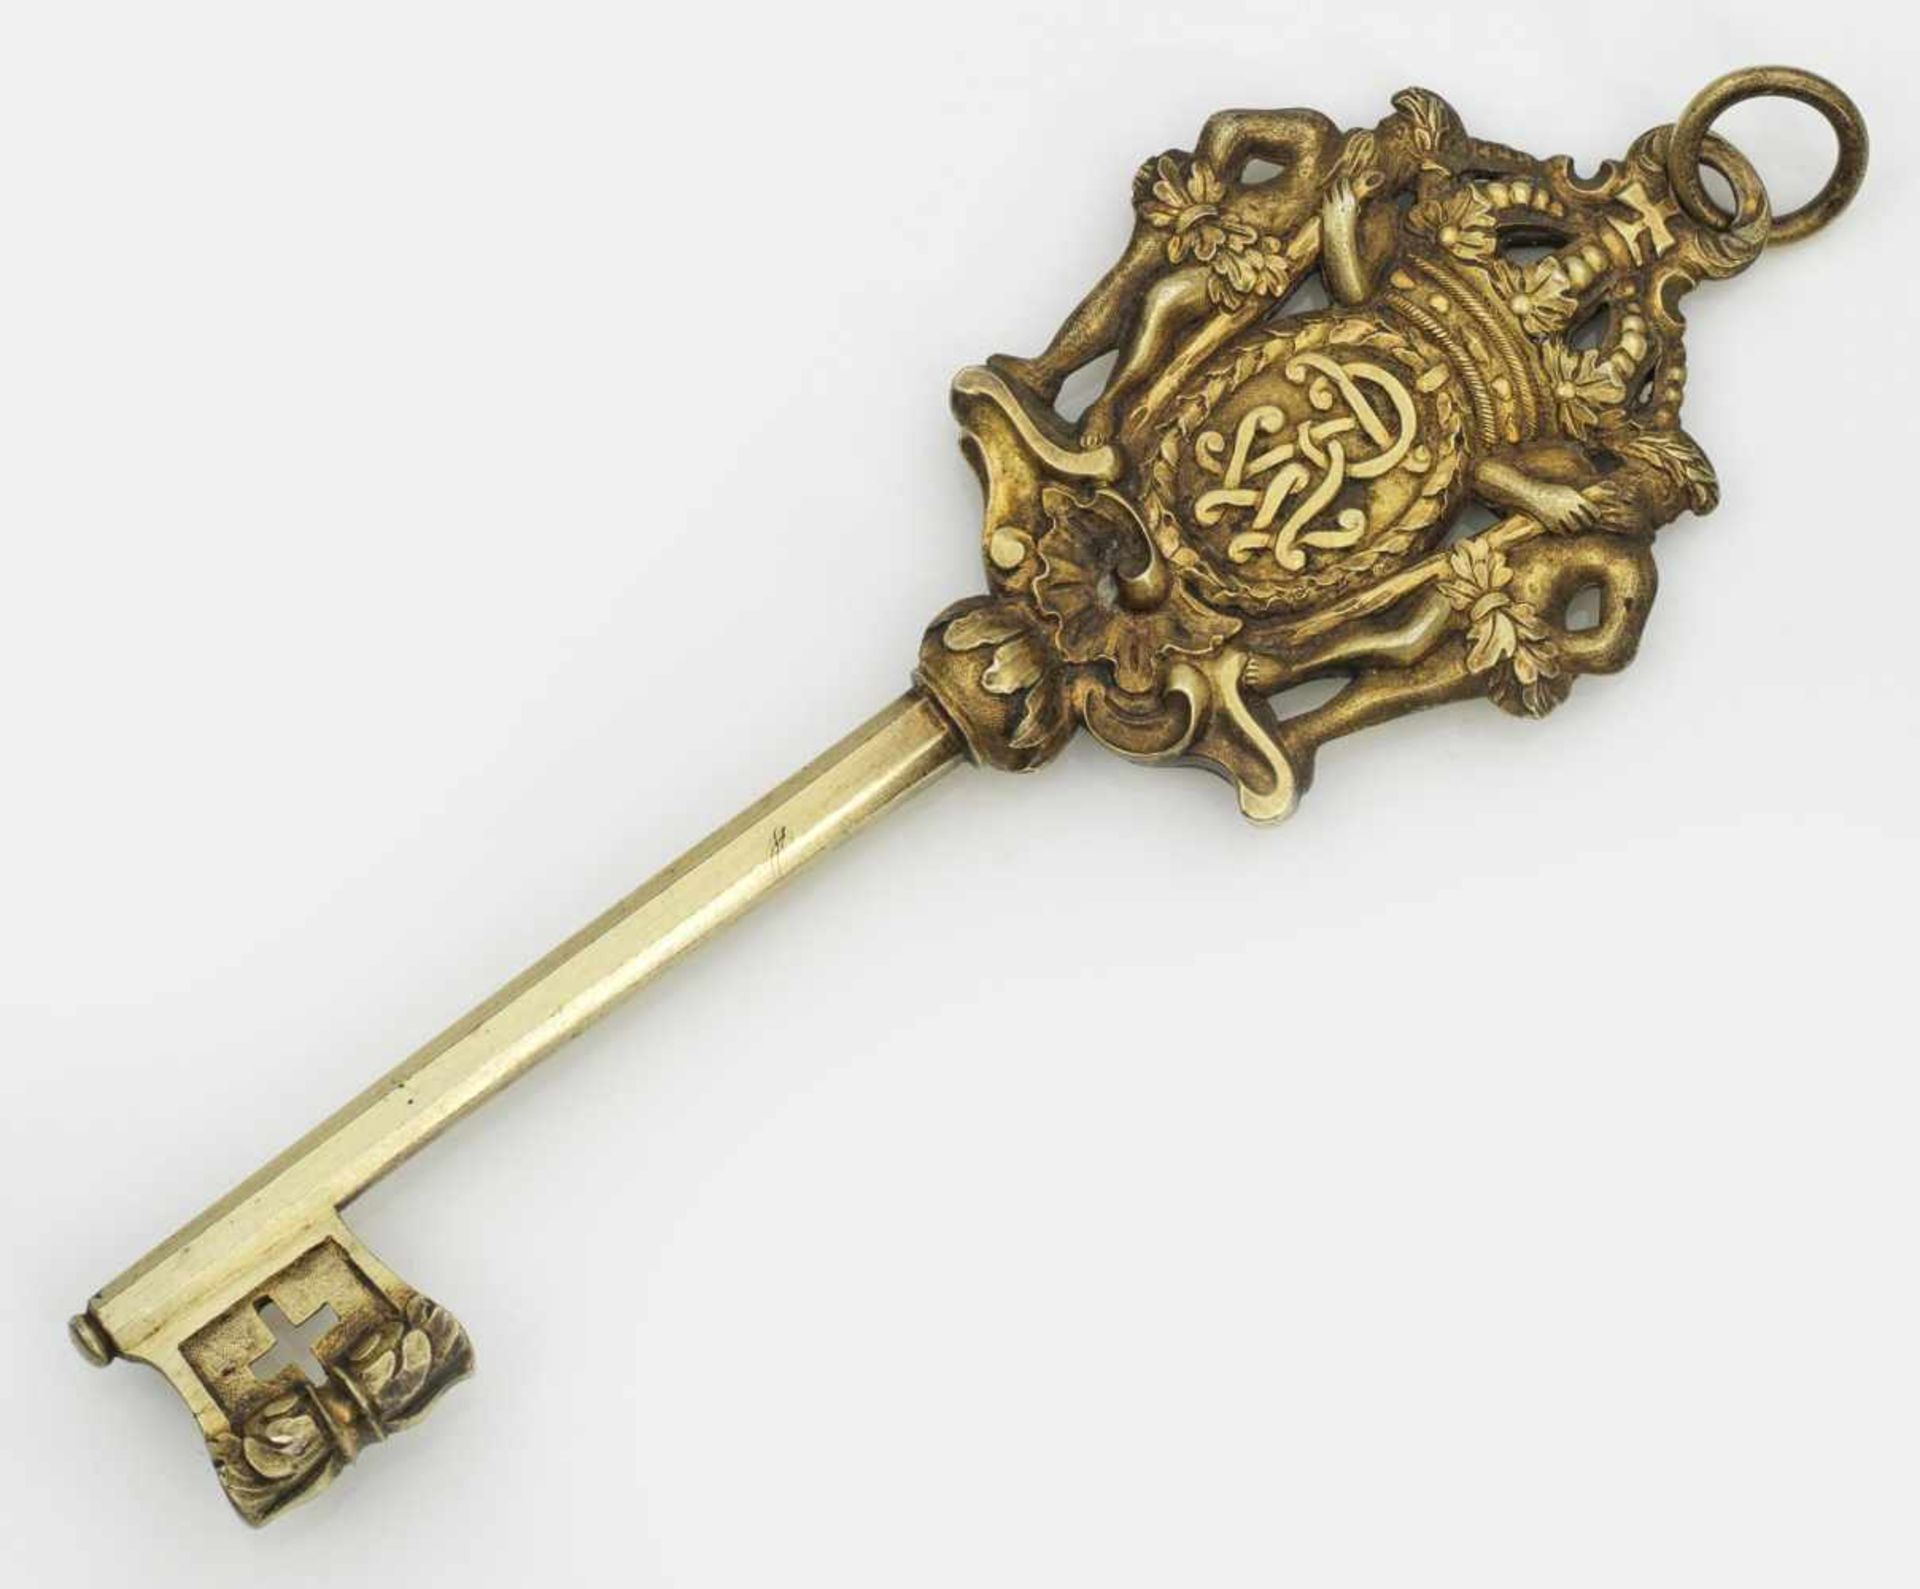 Kammerherrenschlüssel des Königreich Preußensaus der Serie "die goldenen Schlüssel der Könige".